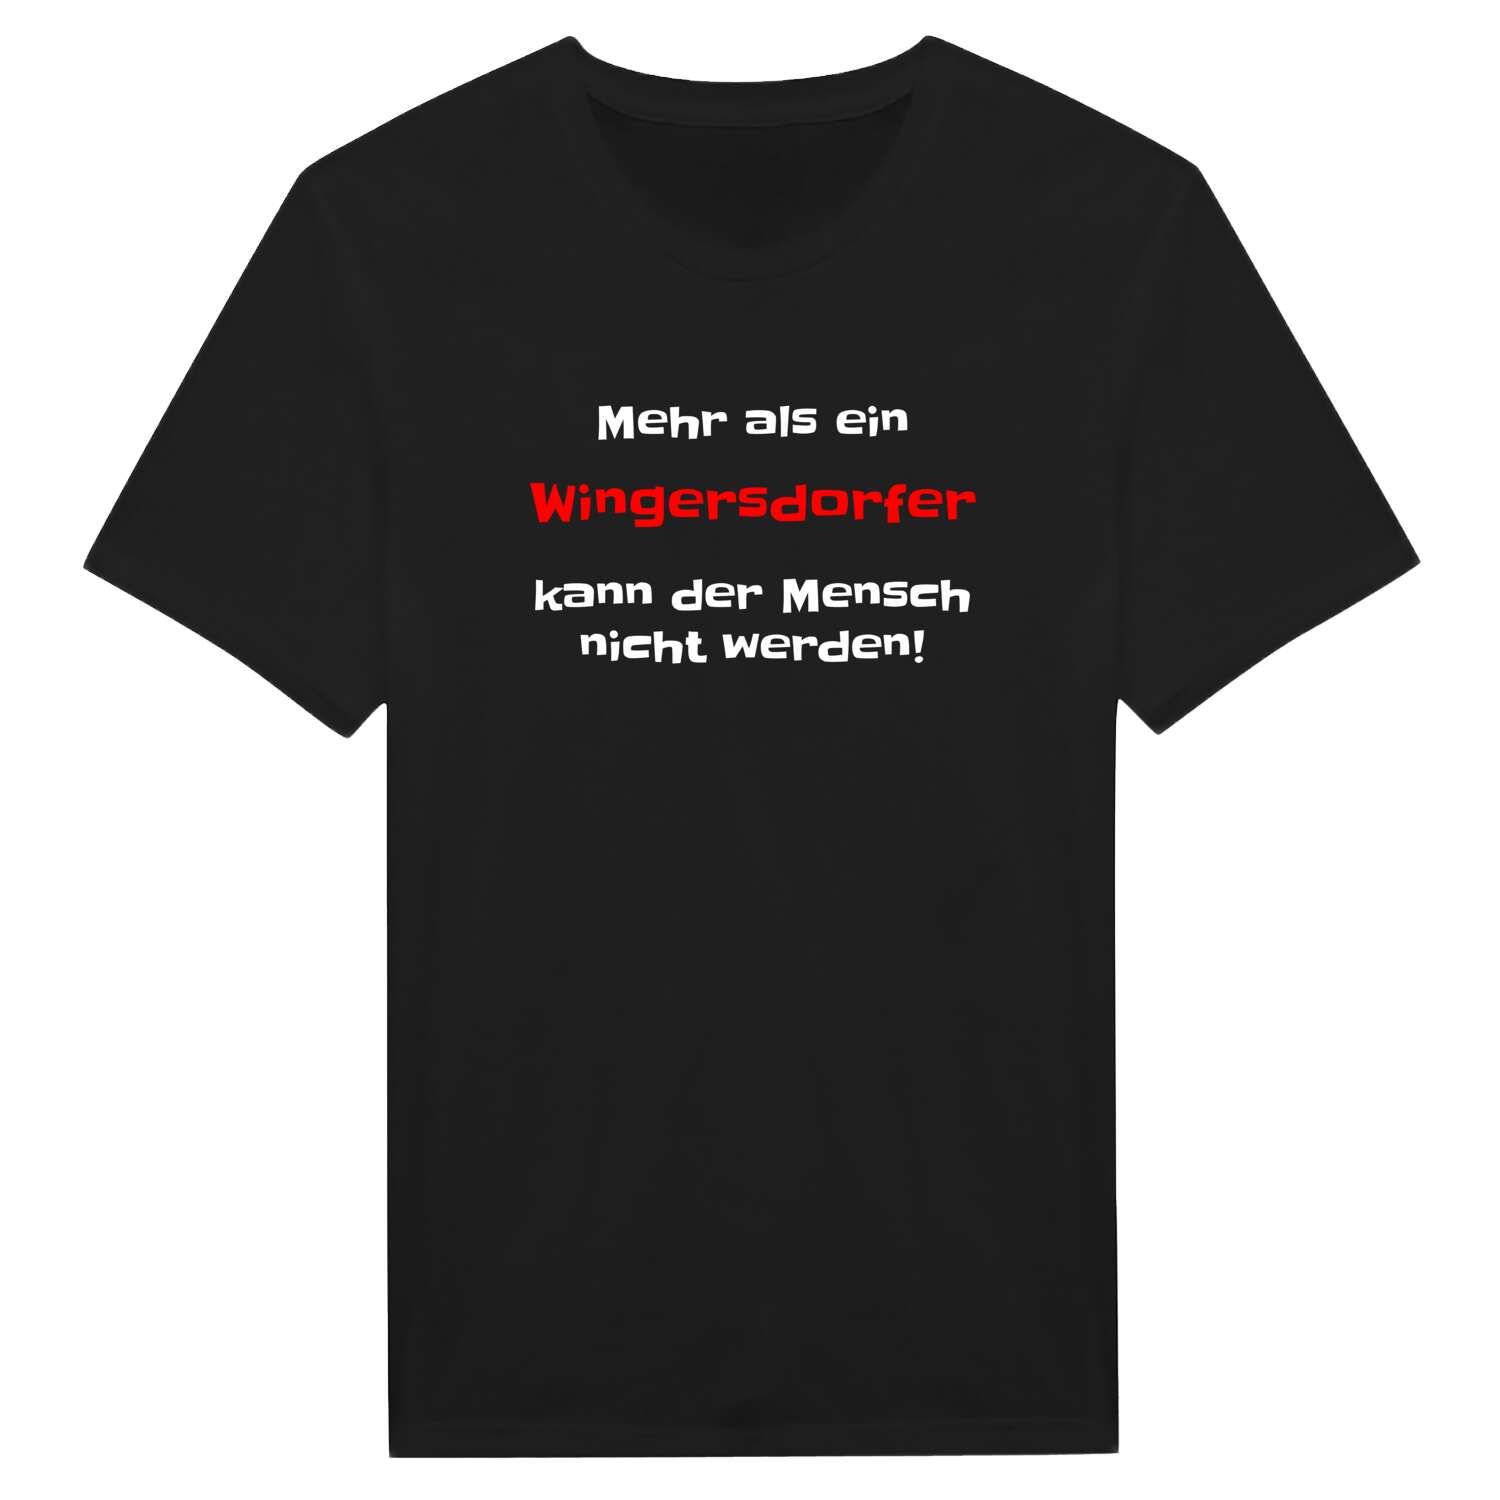 Wingersdorf T-Shirt »Mehr als ein«